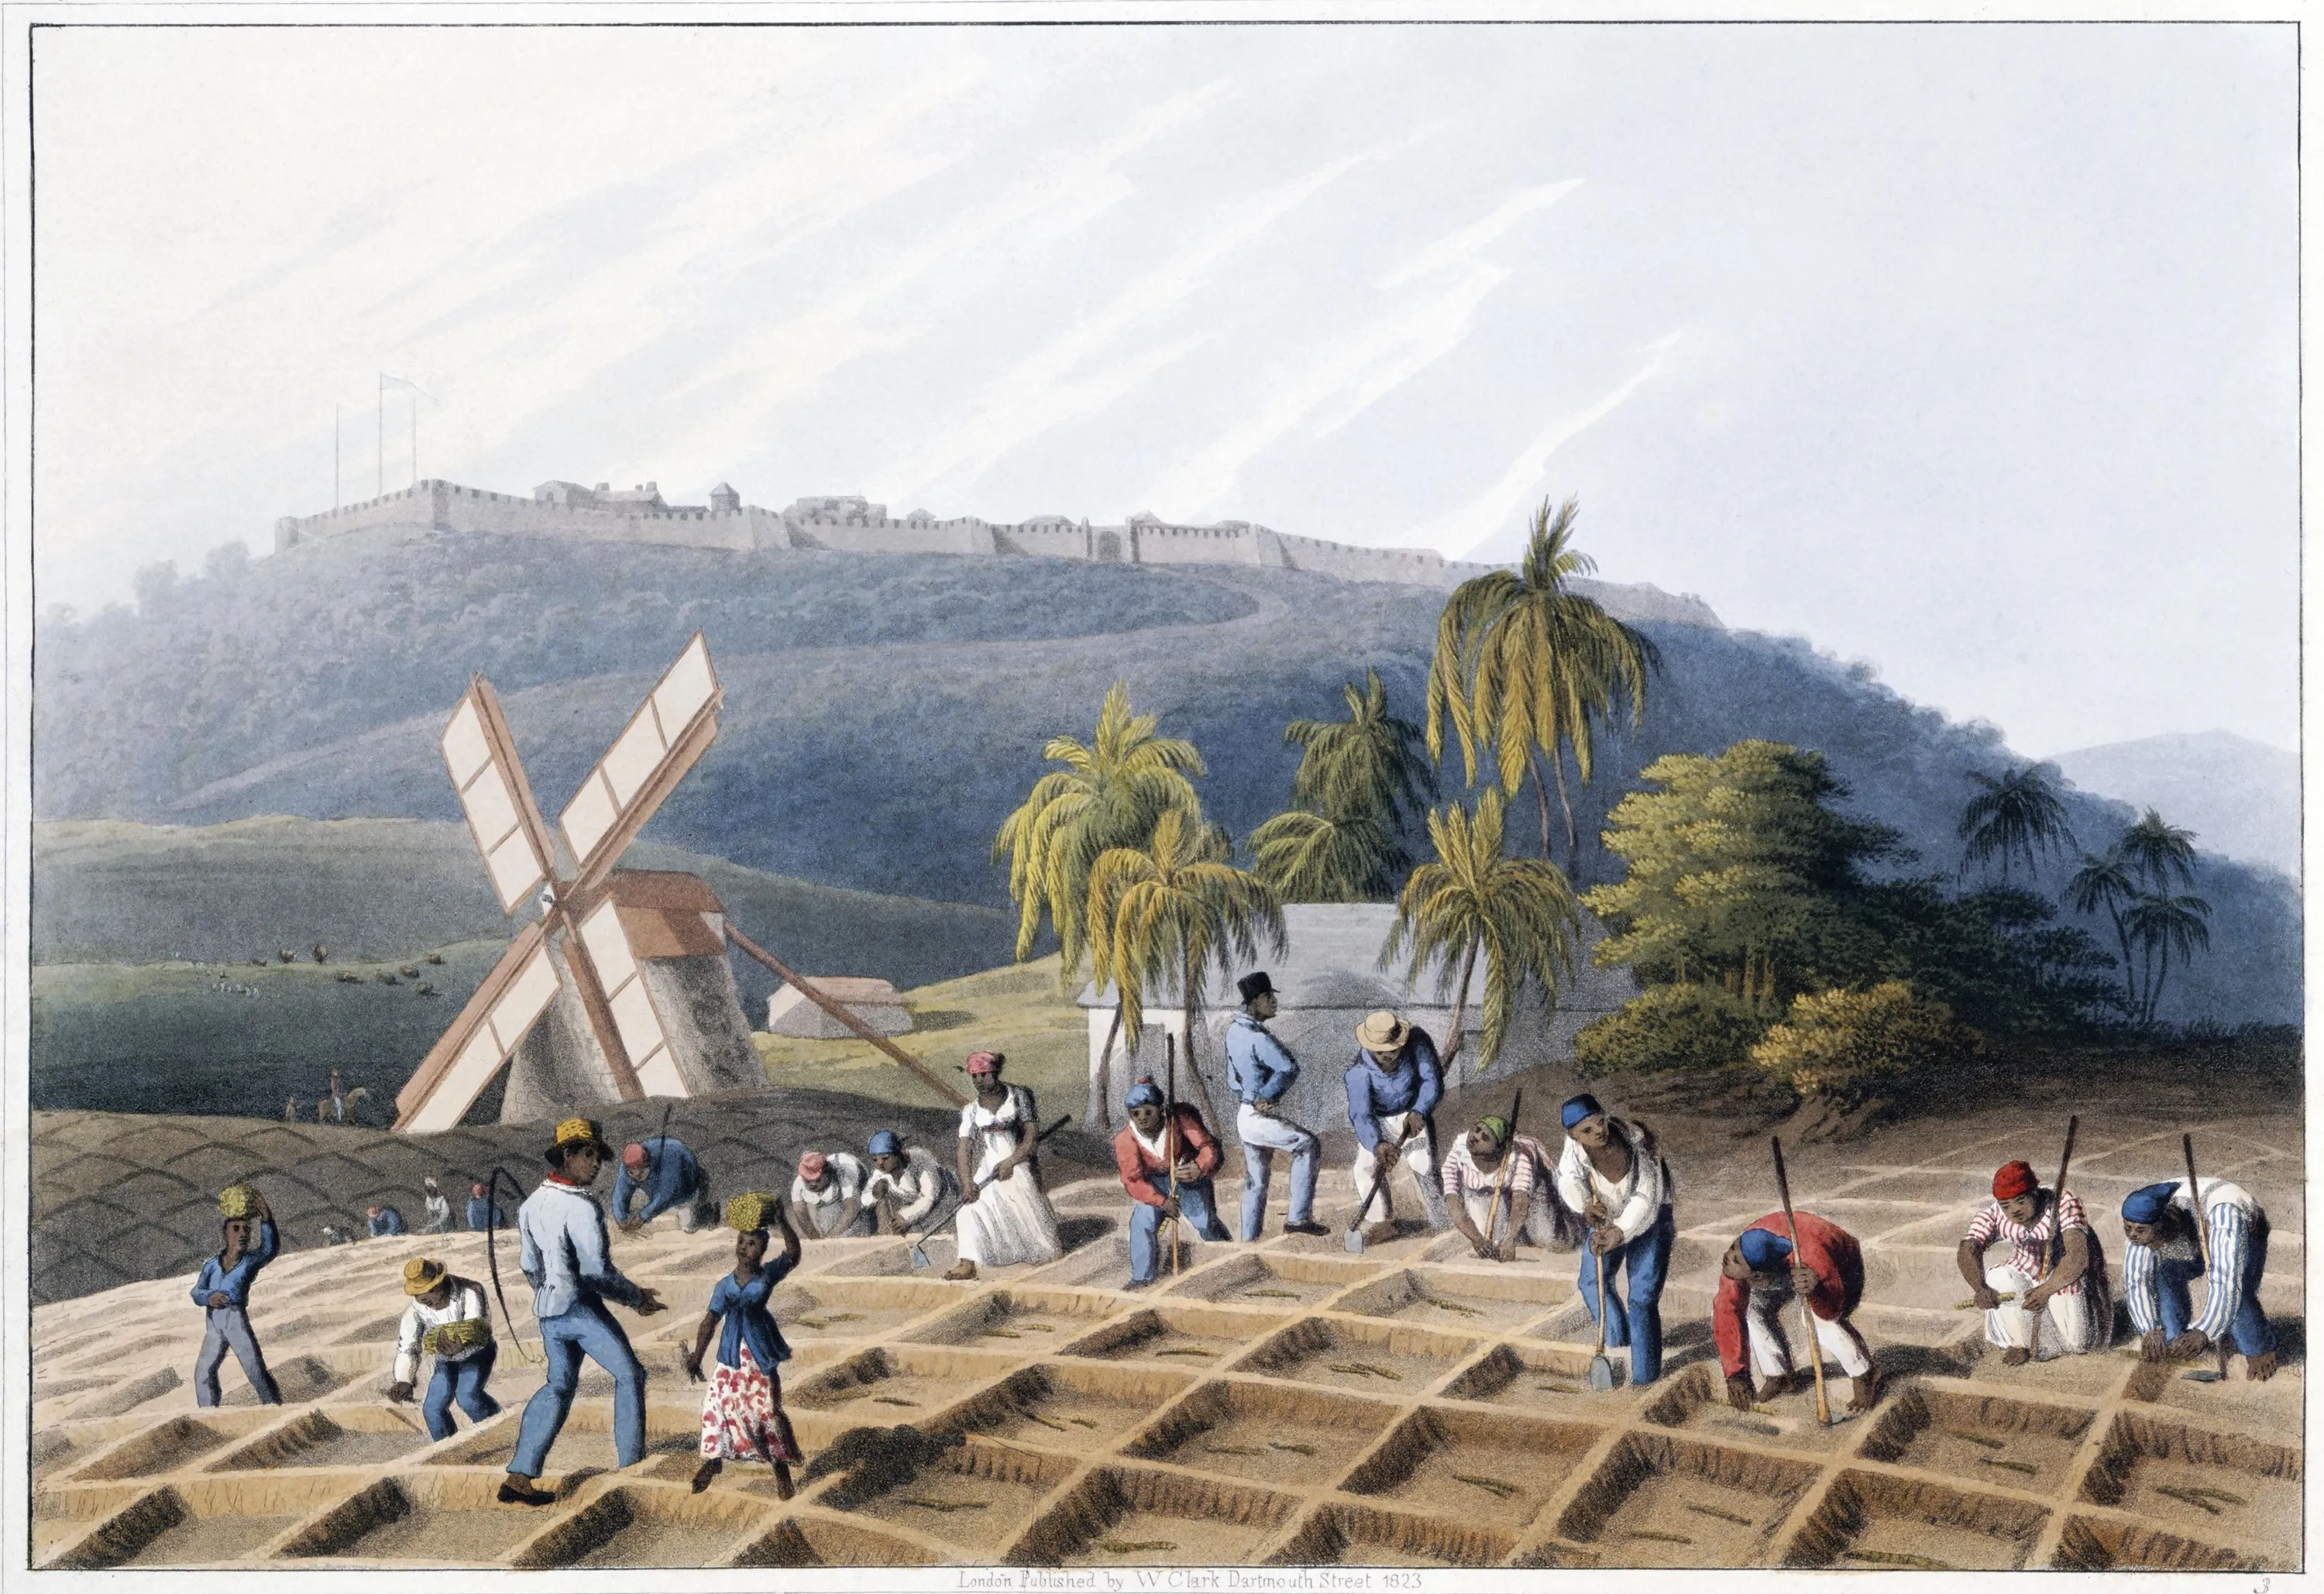 Le travail sur une plantation de canne à sucre, lithographie de William Clark, 1823.